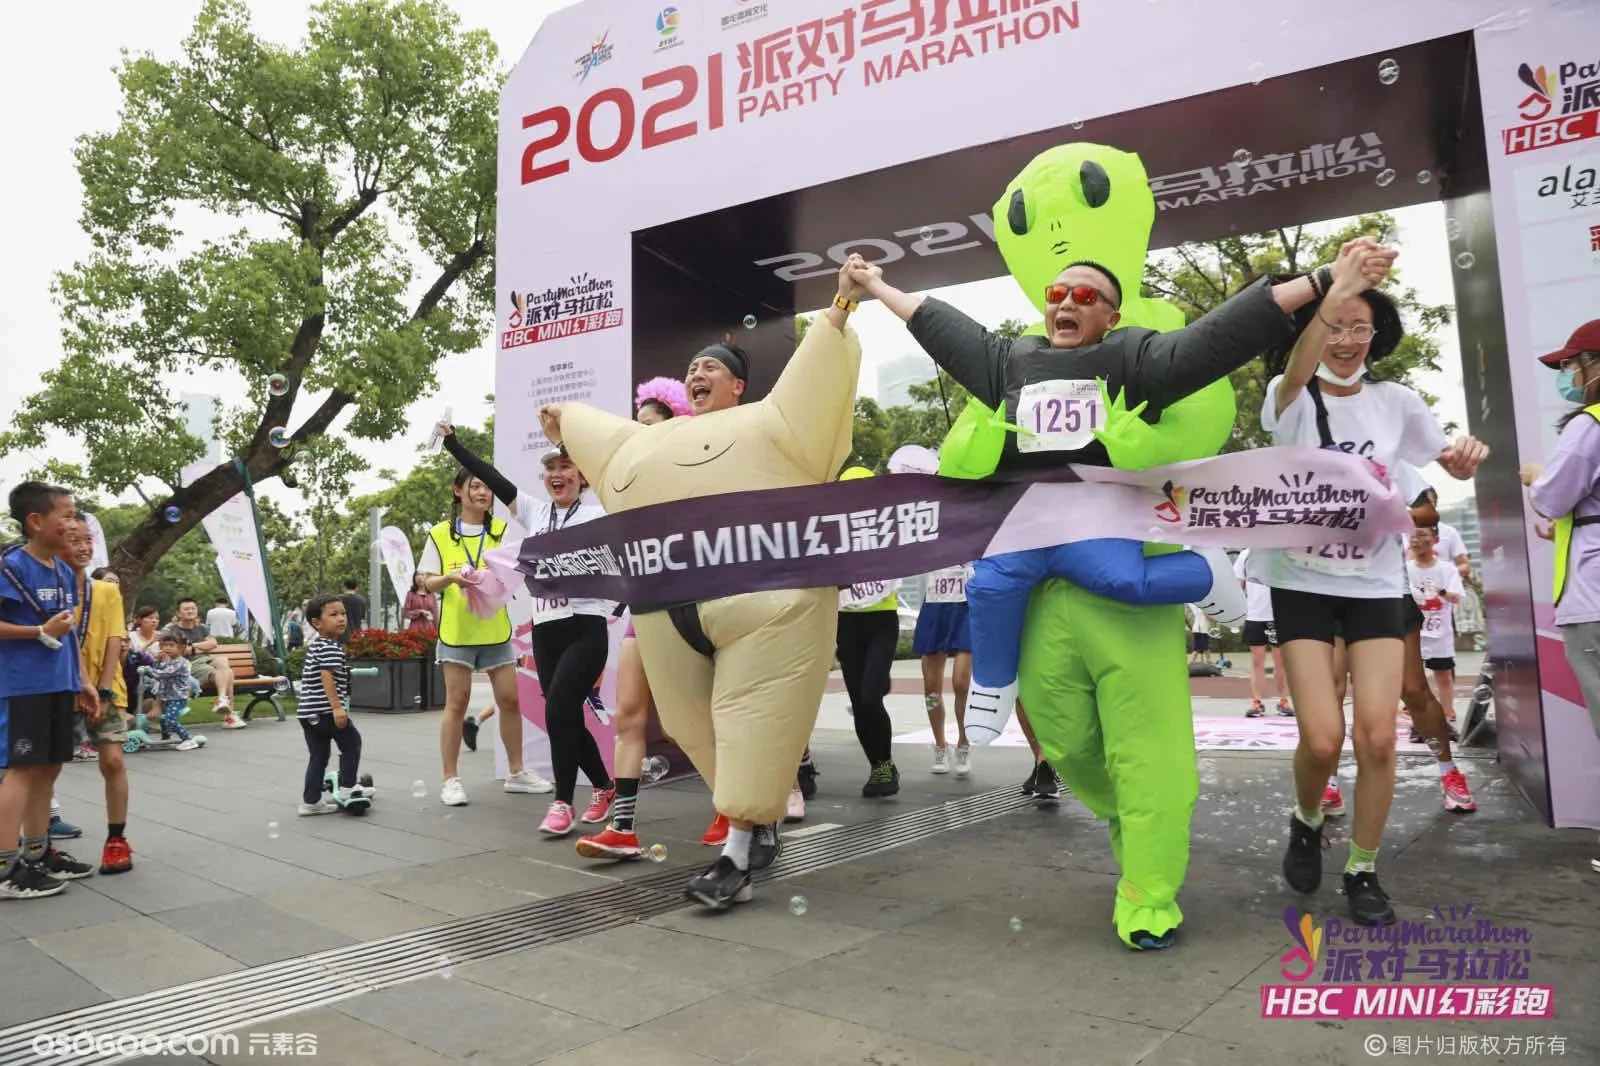 2021派对马拉松HBC MINI幻彩跑